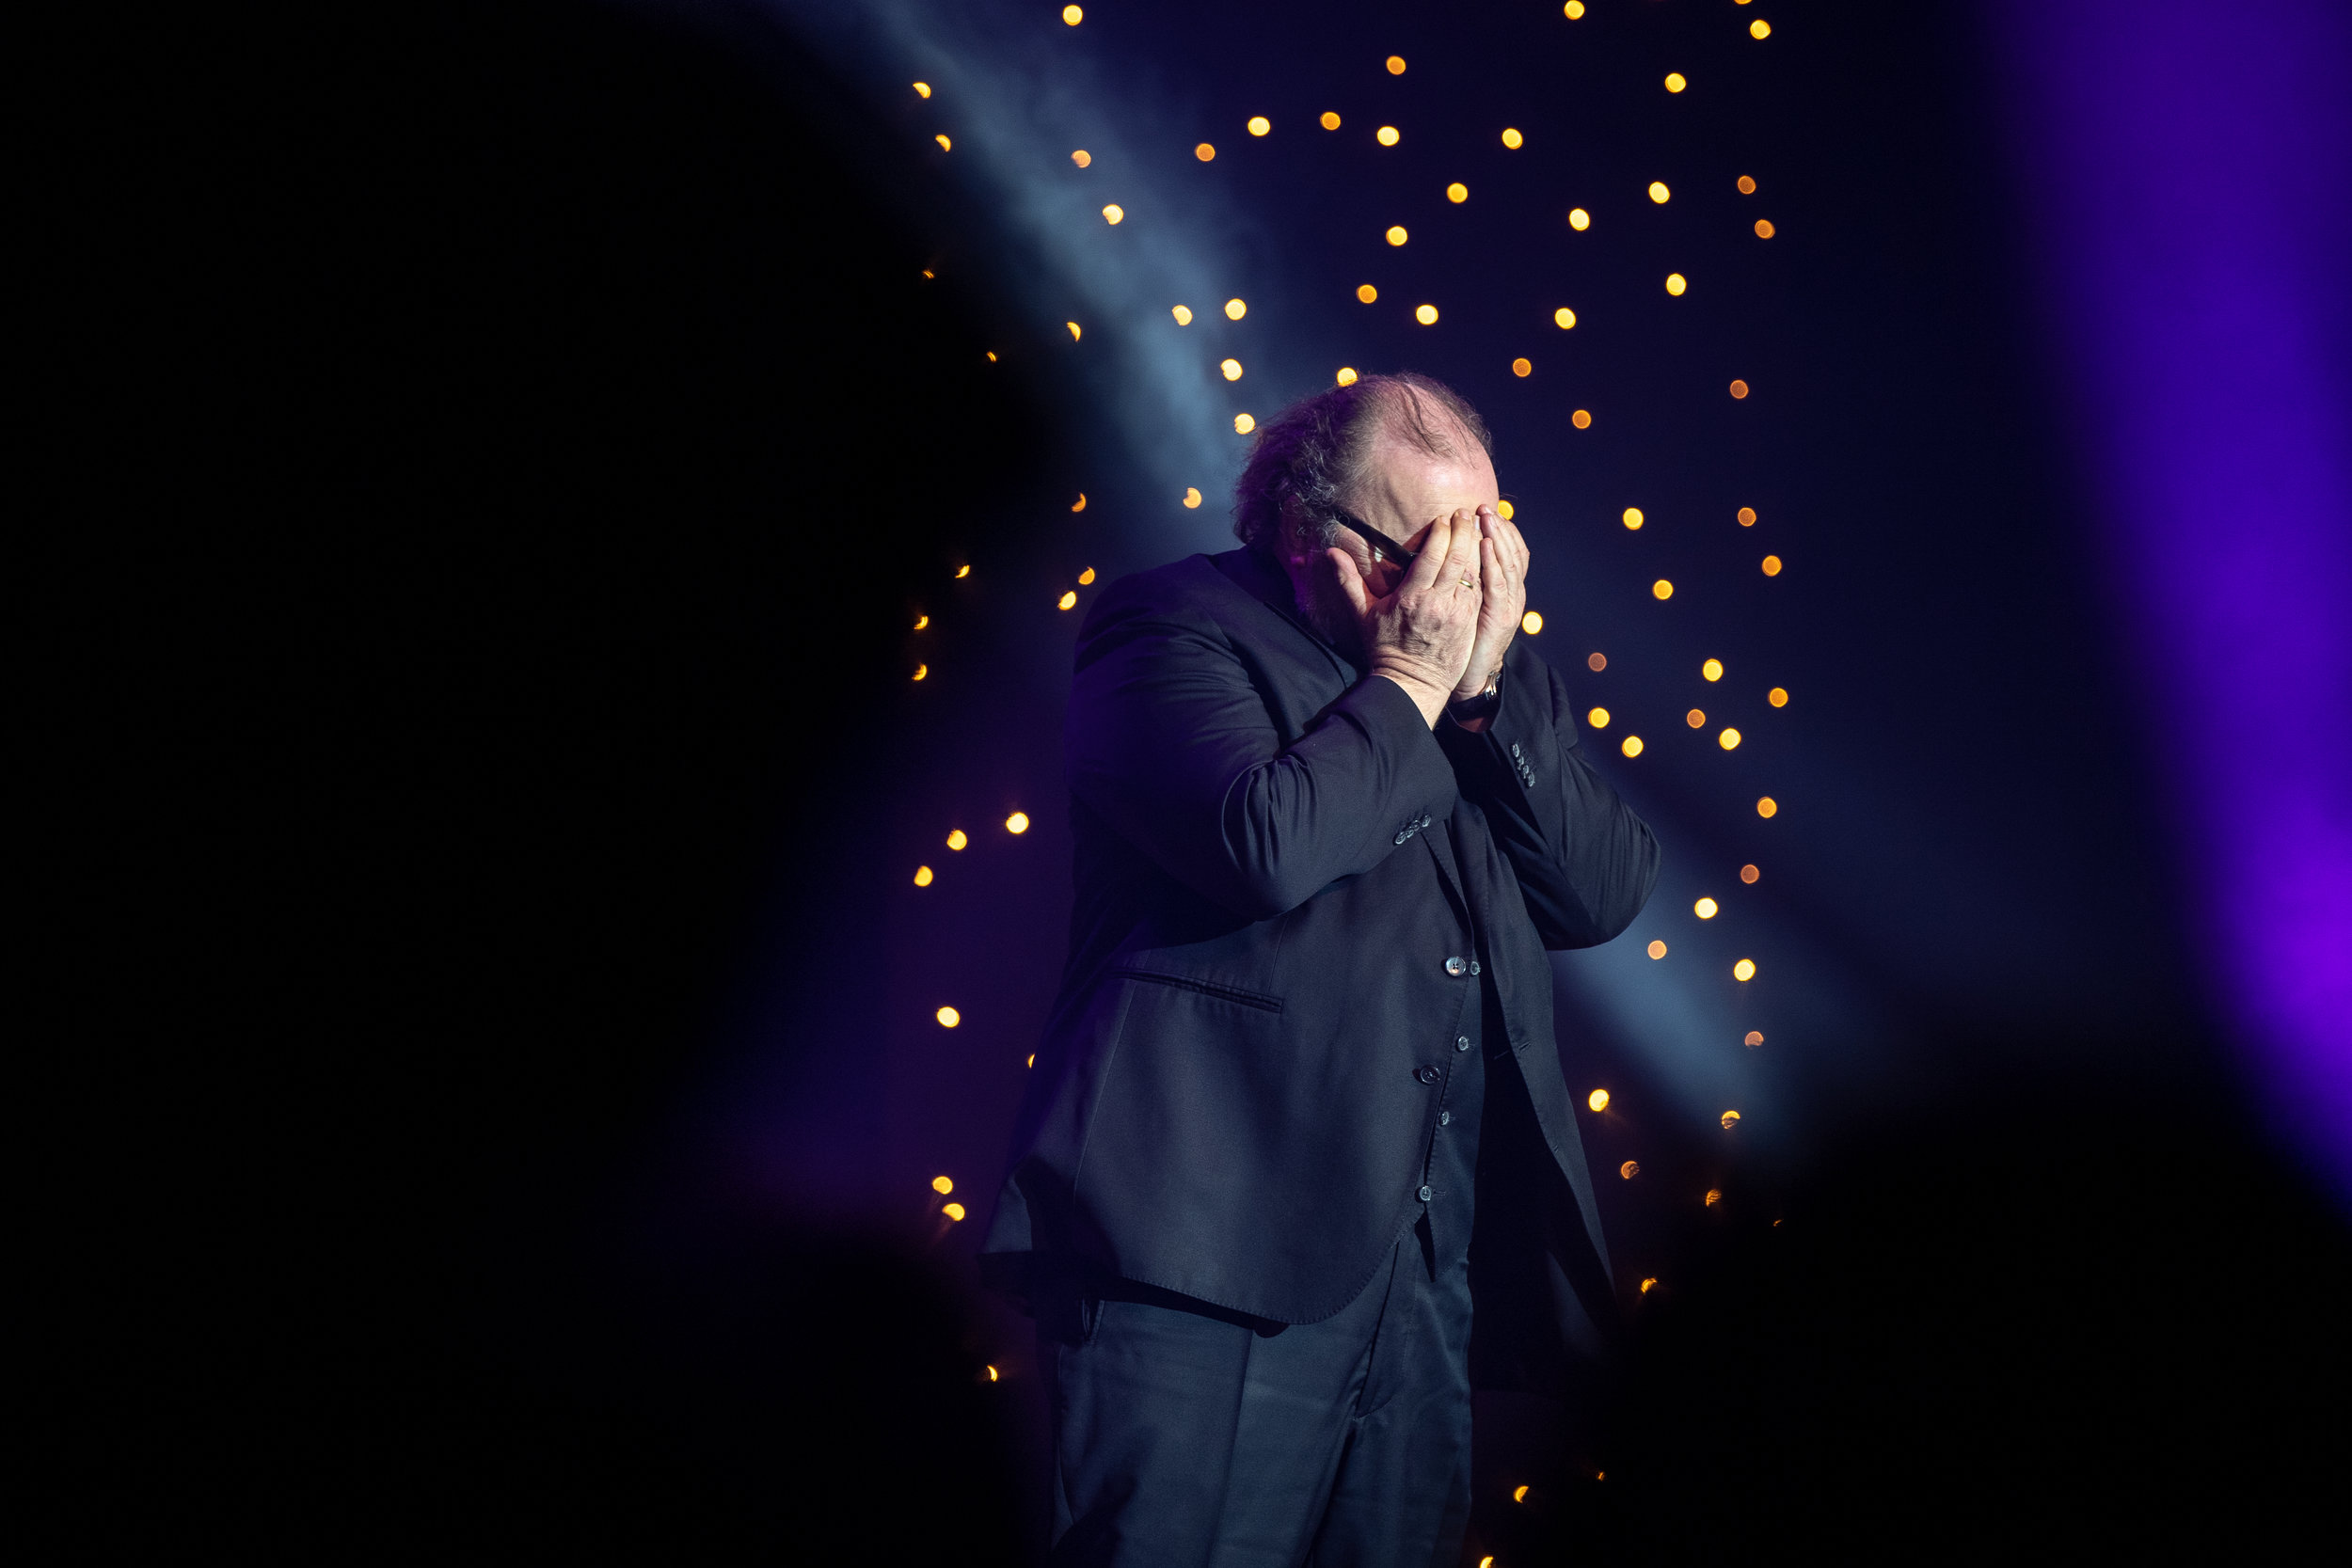  Arndt versteckt seine Tränen, nachdem er den Carl Laemmle Produzentenpreis 2019 gewonnen hat. 